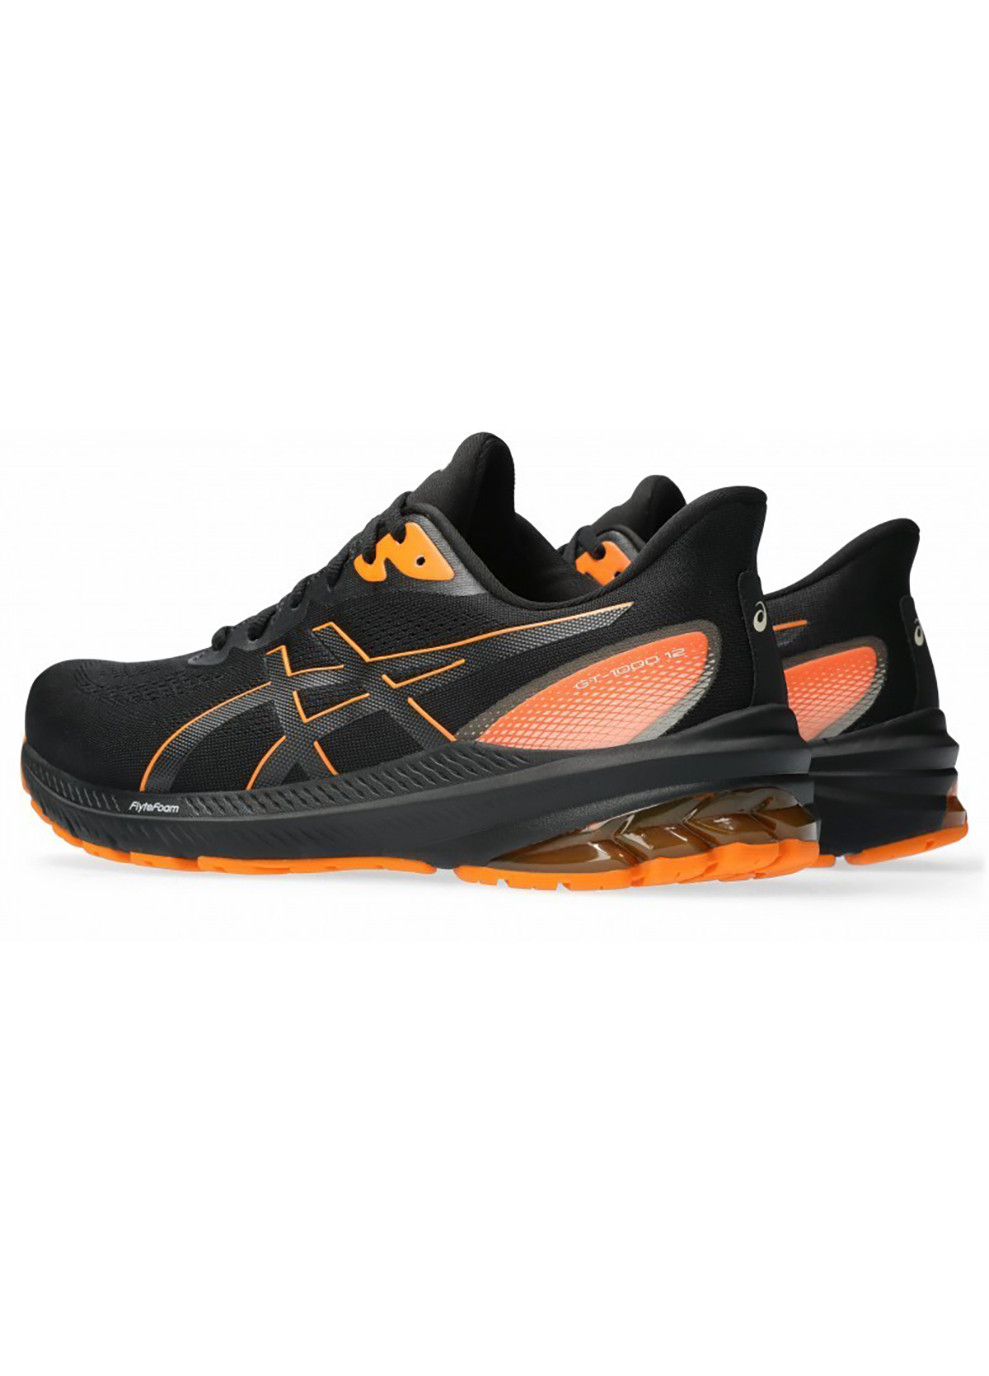 Комбіновані Осінні чоловічі кросівки gt-1000 12 gtx чорний, помаранчевий Asics